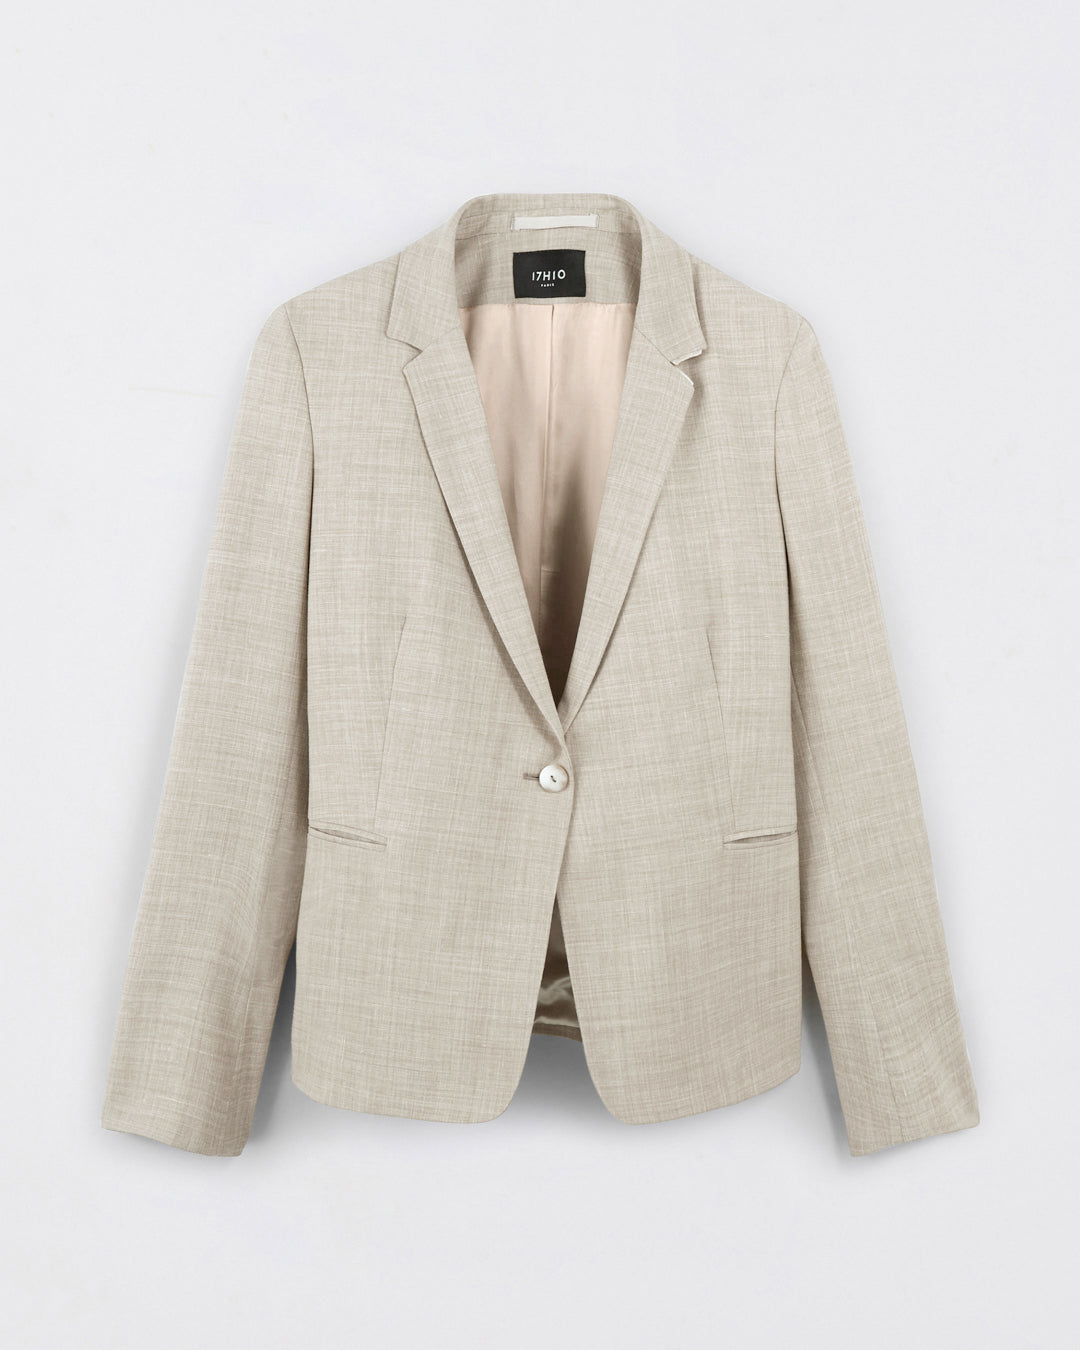 Paris suit jacket - Sable